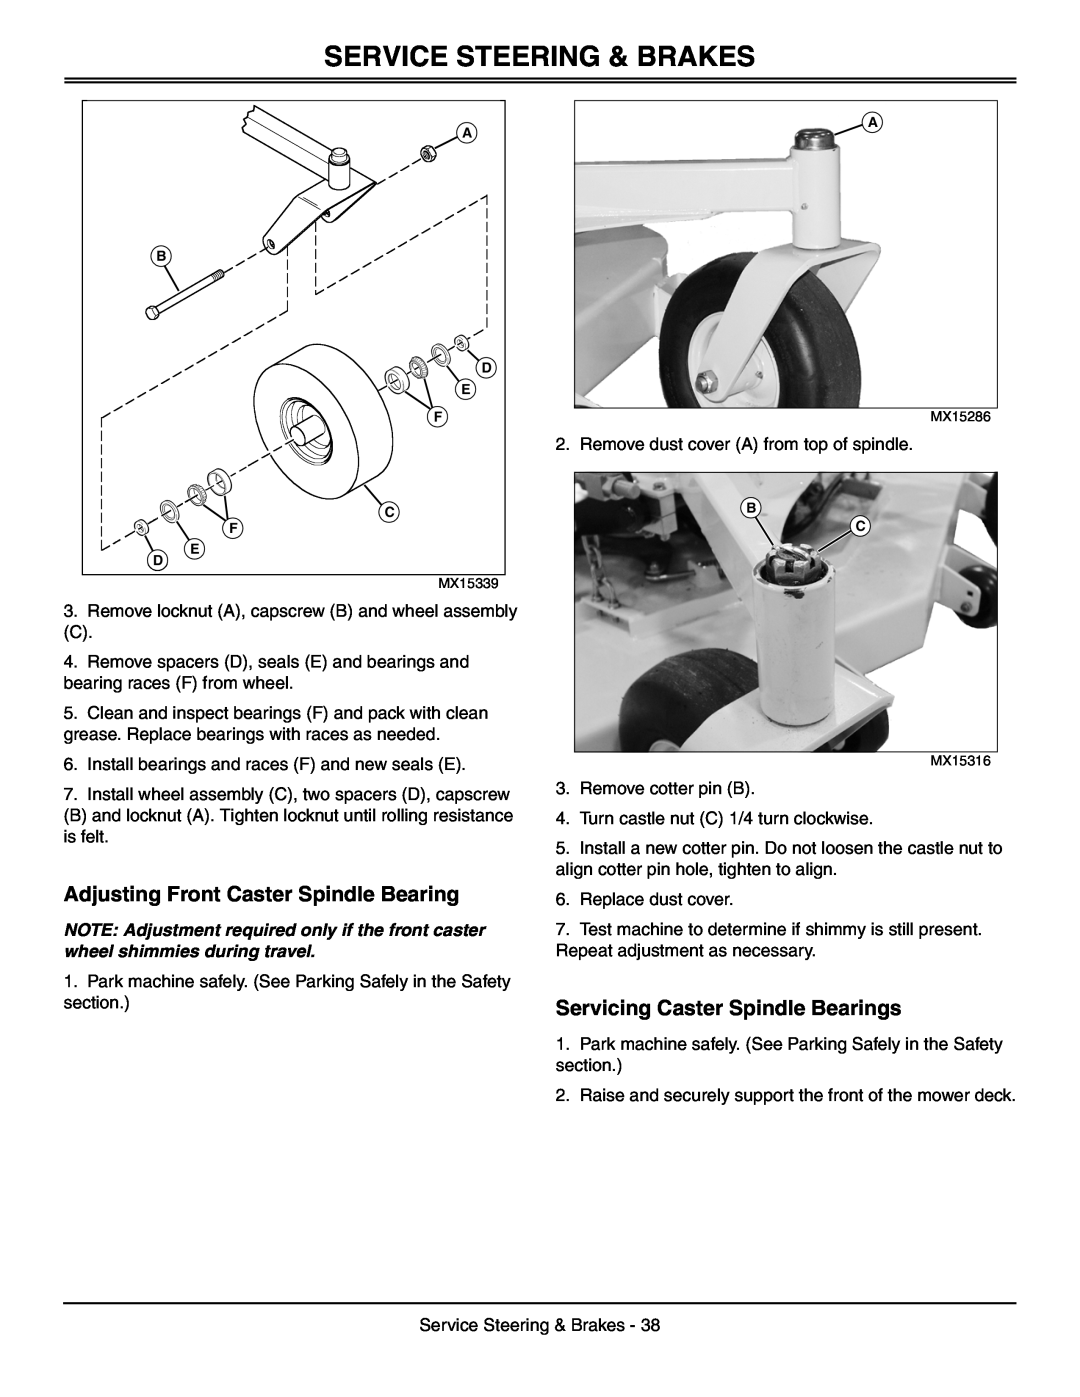 Great Dane GDRZ52-25KAE, GDRZ72-27KHE manual Adjusting Front Caster Spindle Bearing, Servicing Caster Spindle Bearings 